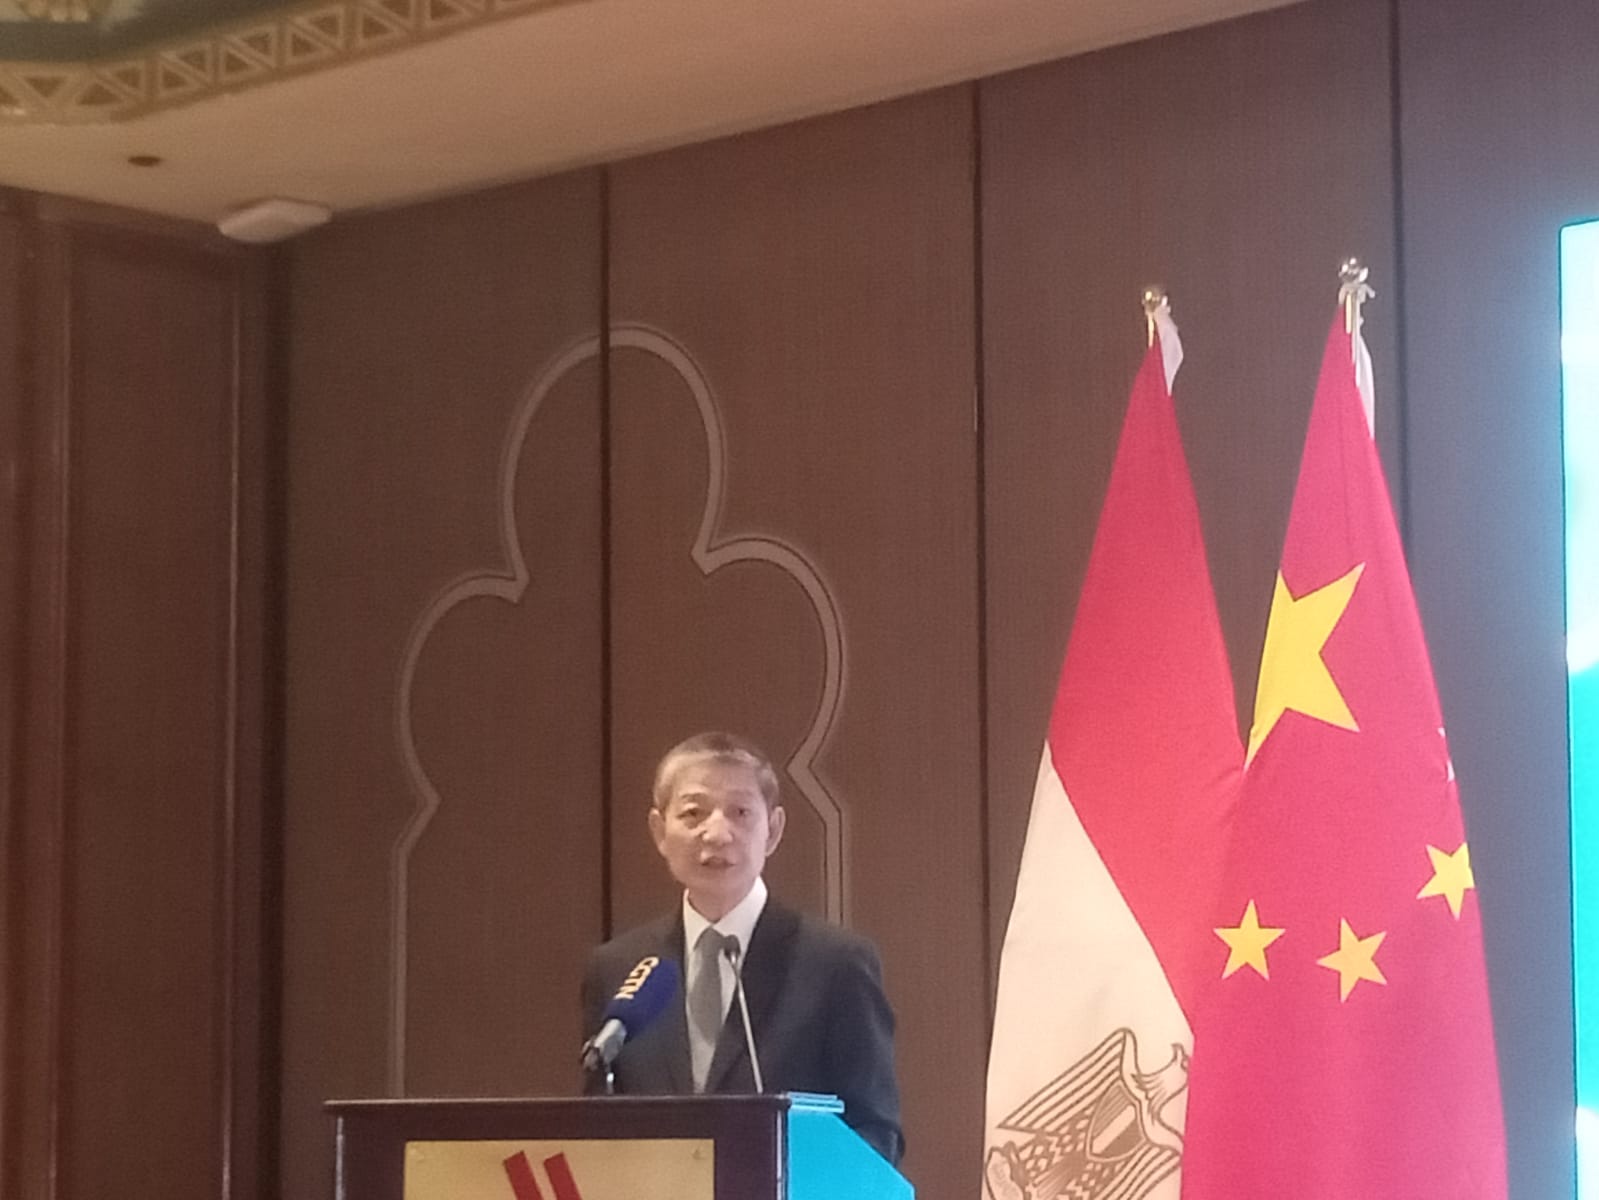 سفير الصين خلال كلمته في حفل الصداقة بين الصين ومصر